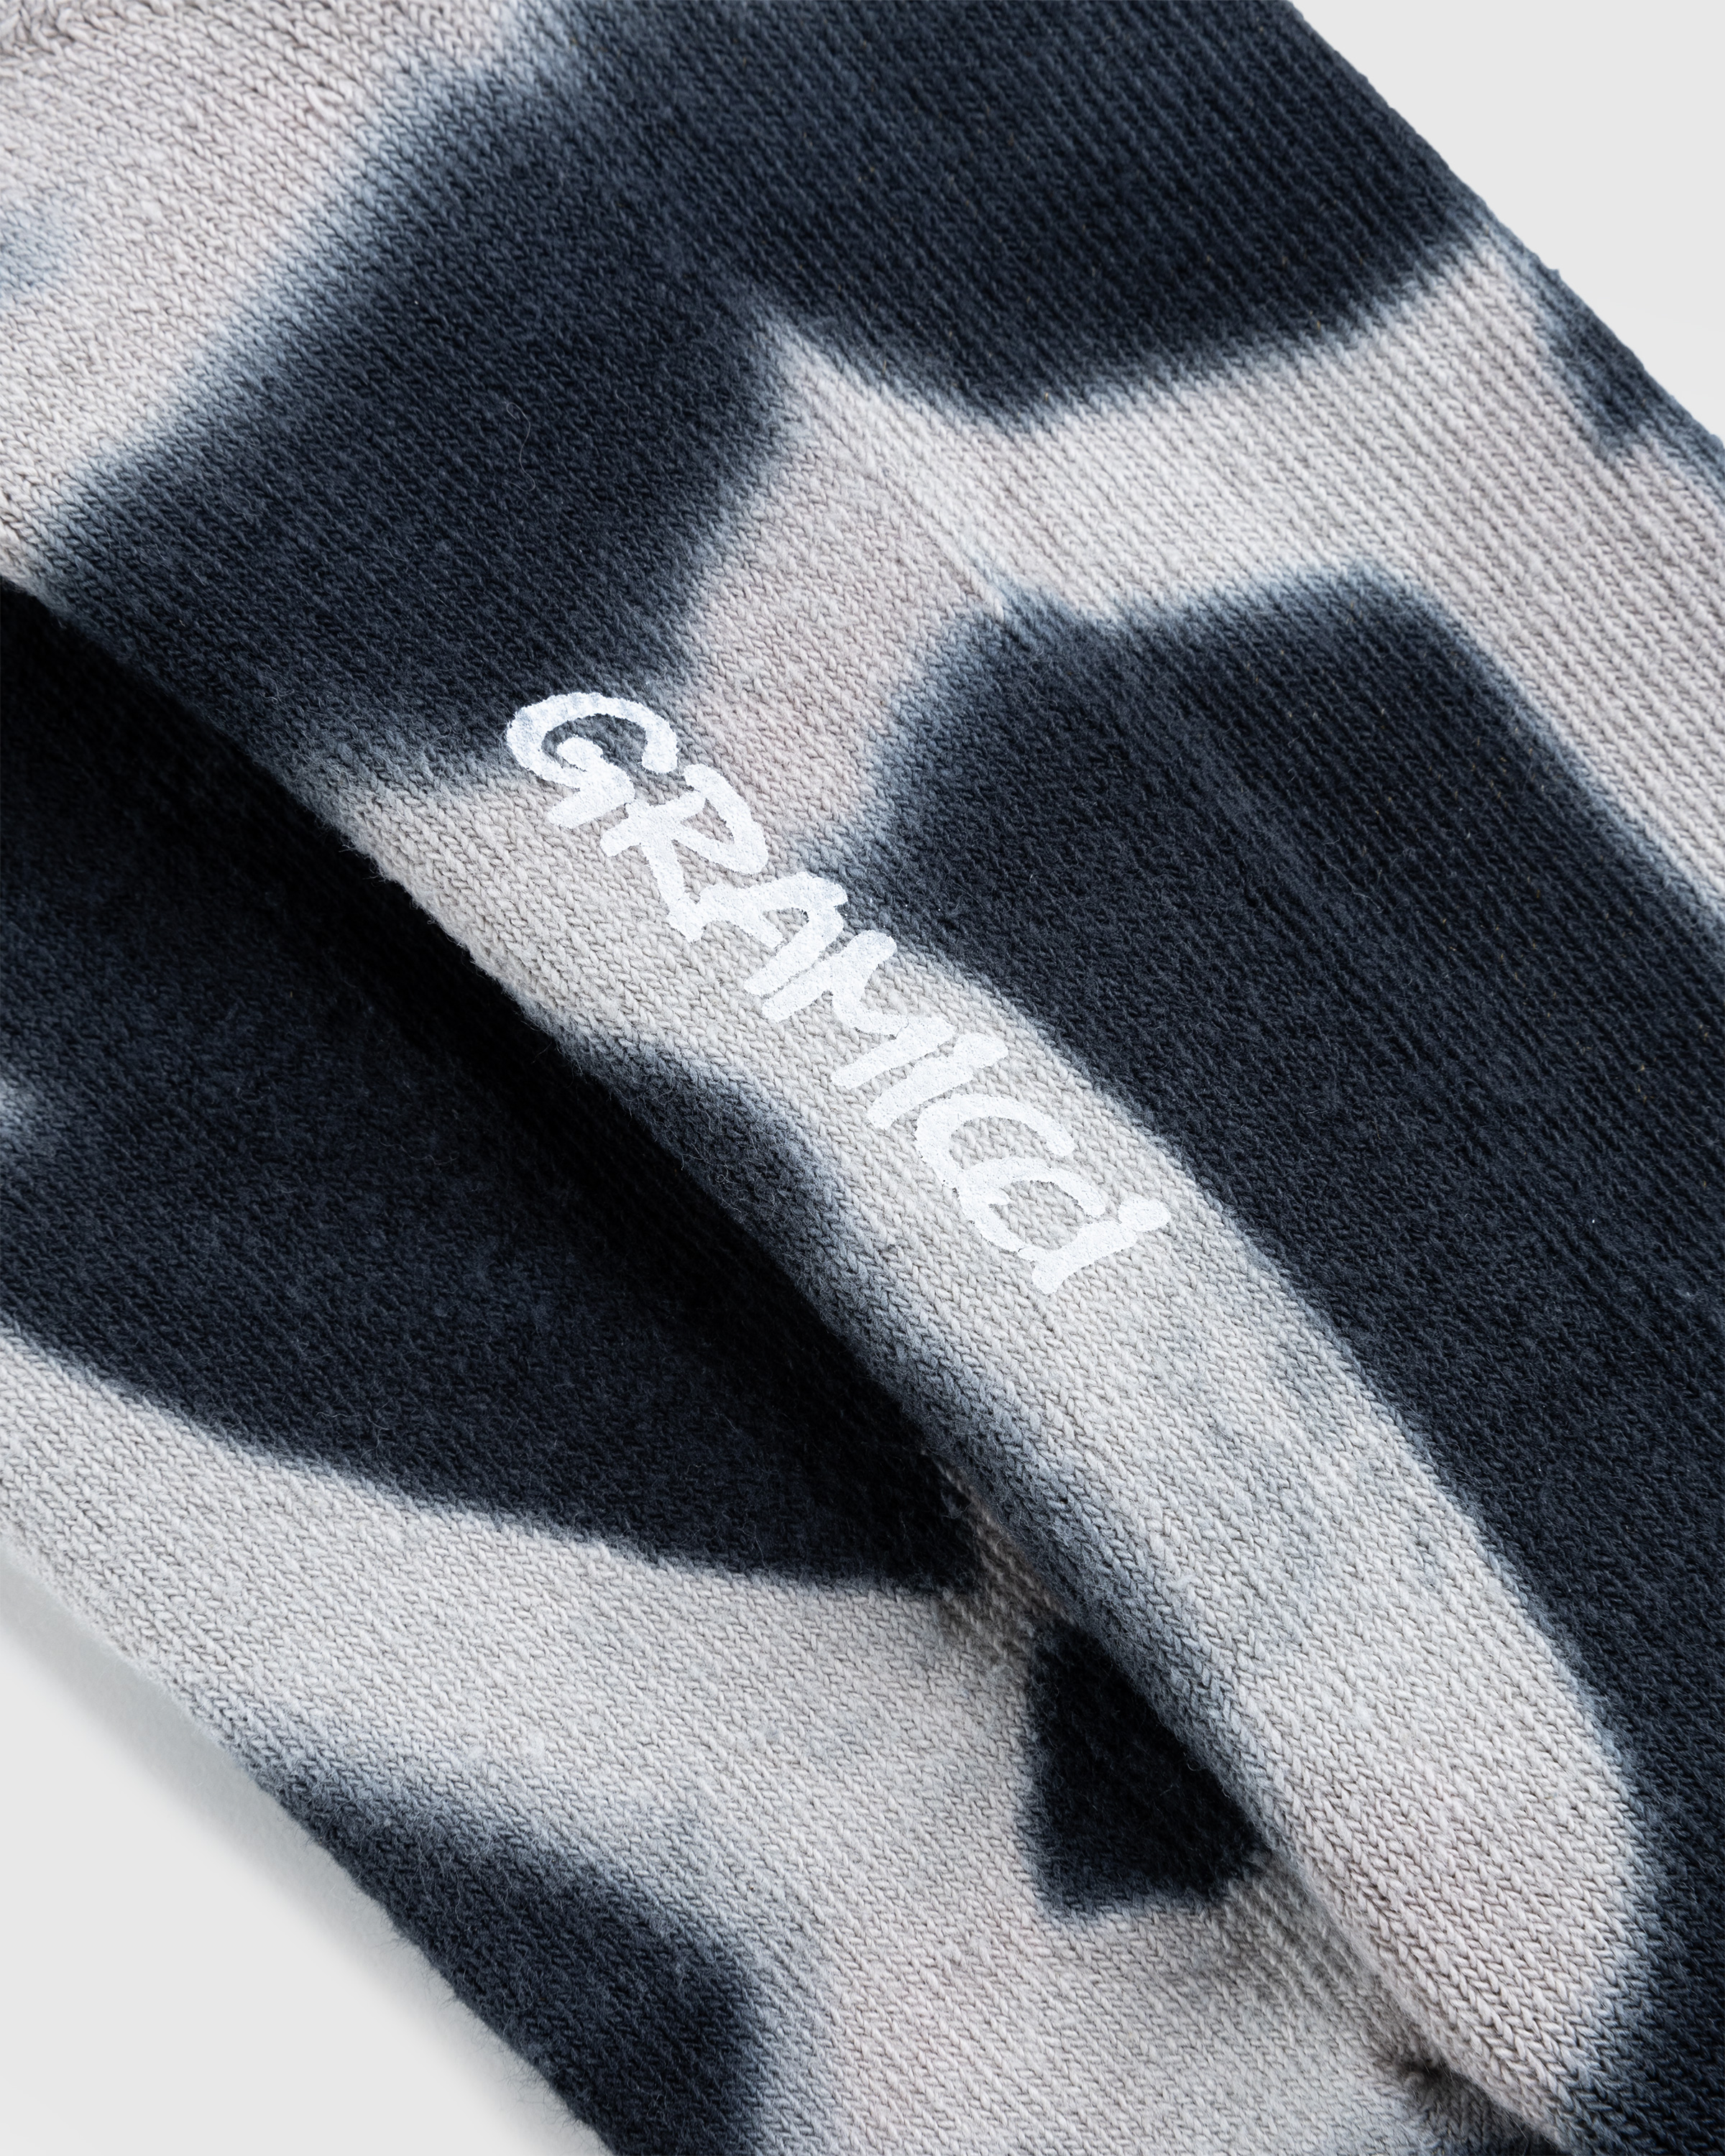 Gramicci – Tie-Dye Crew Socks A - Socks - Multi - Image 3